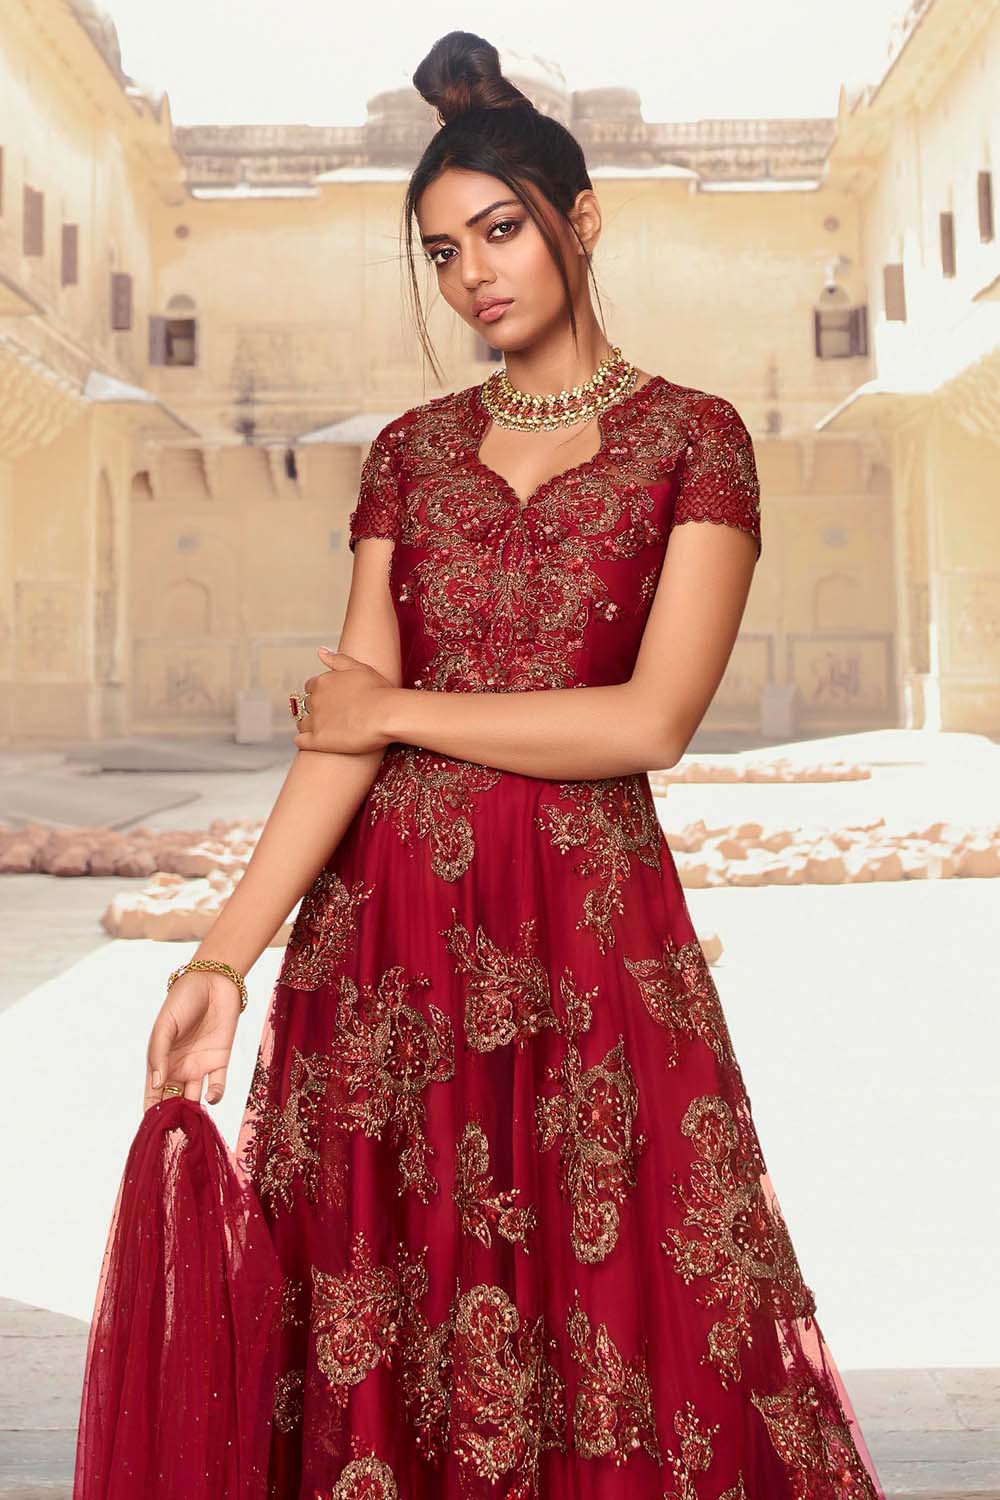 The Glamorous Red Designer Bridal Lehenga Choli - Etsy